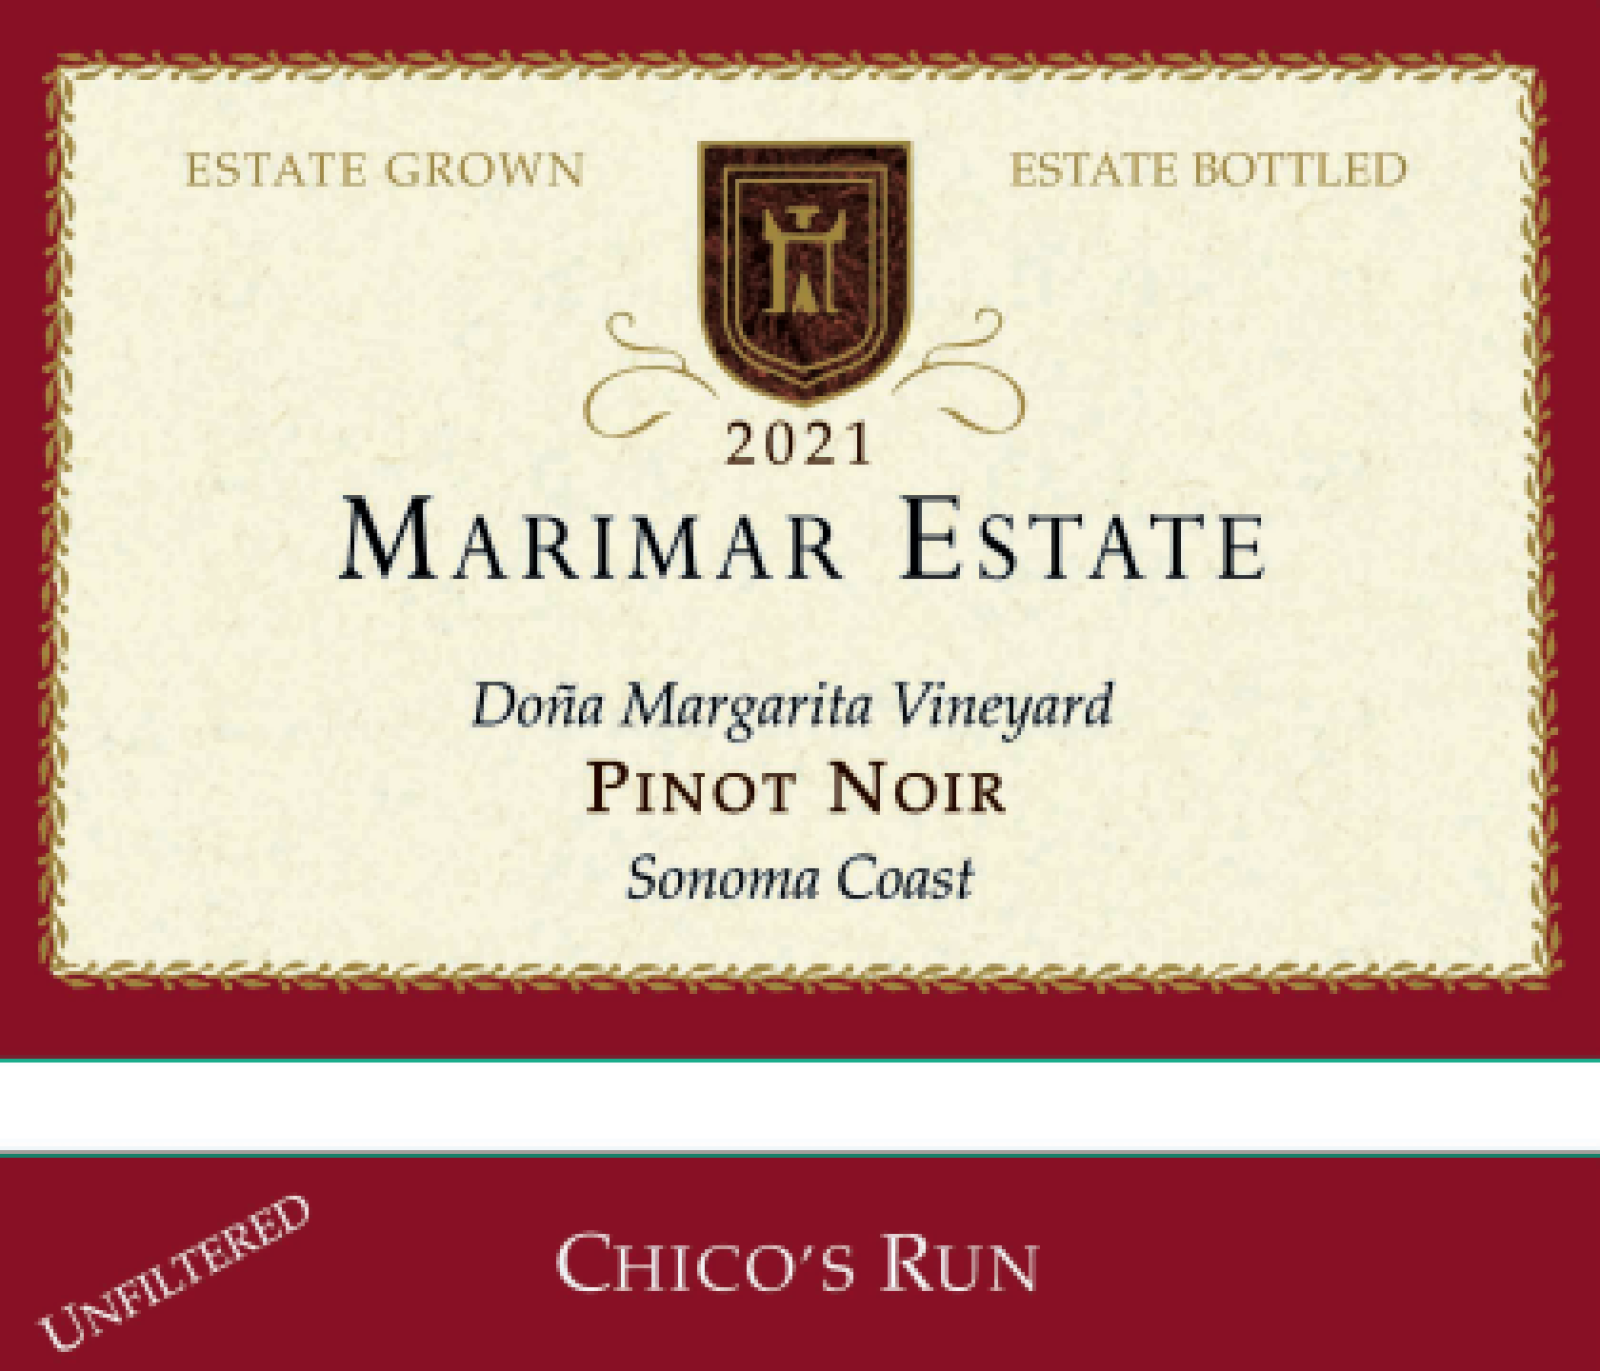 Marimar Chico's Run Pinot Noir 2021